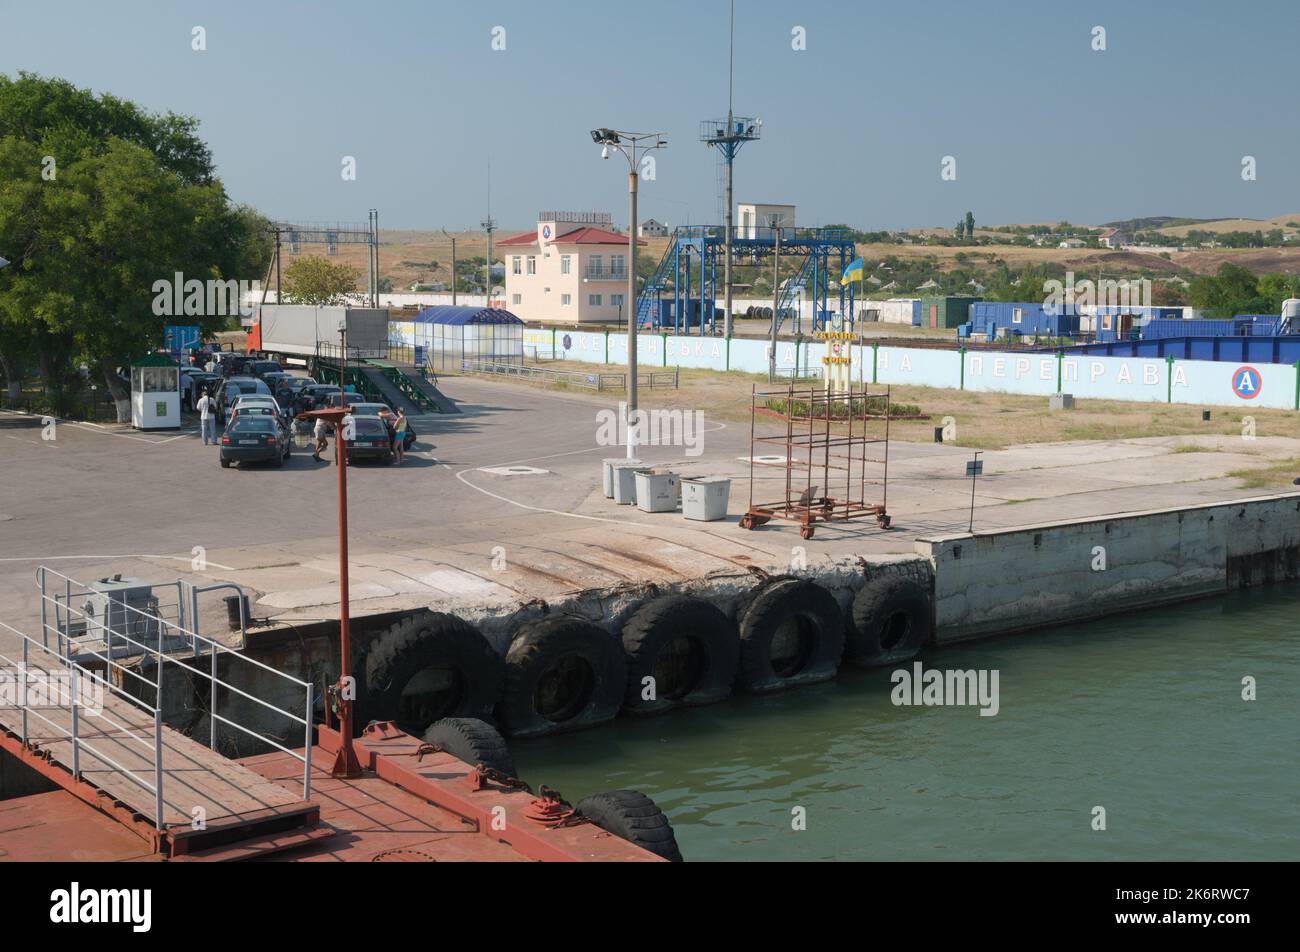 Cars waiting in line in Kerch ferry crossing, Kerch, Crimea, Ukraine Stock Photo